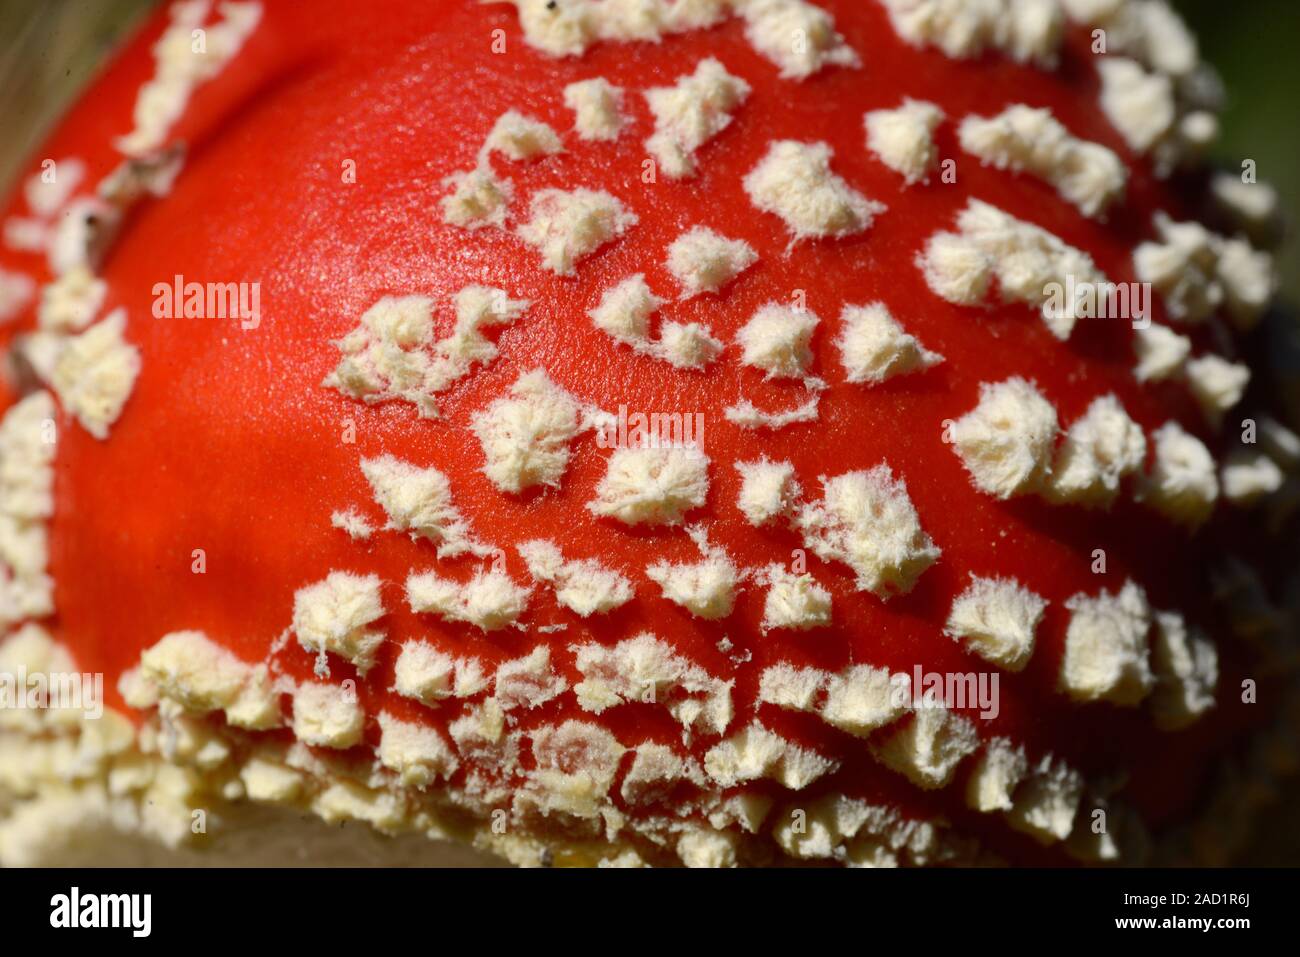 Dettaglio del modello di macchie bianche sul cappuccio rosso del Fly Agaric fungo amanita muscaria, aka Fly amanita Toadstool Foto Stock